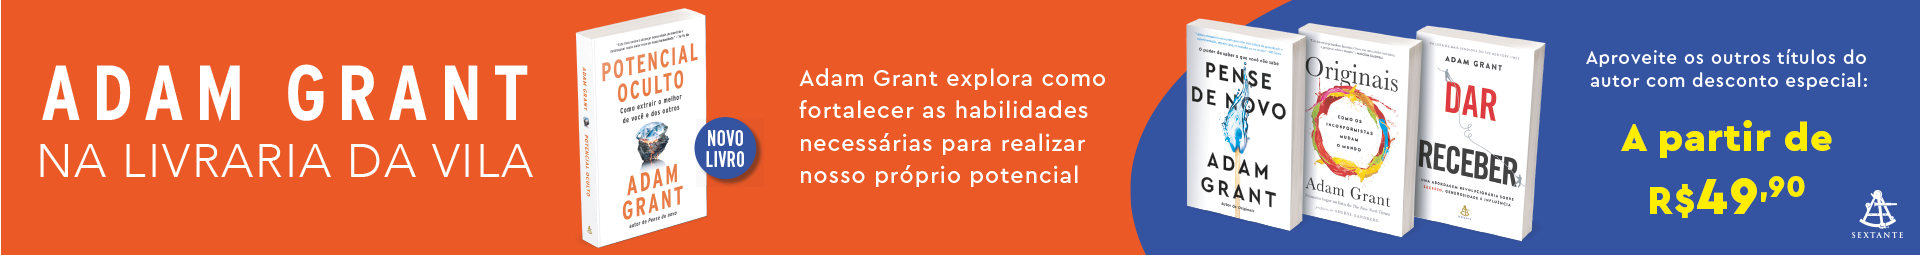 adam-grant